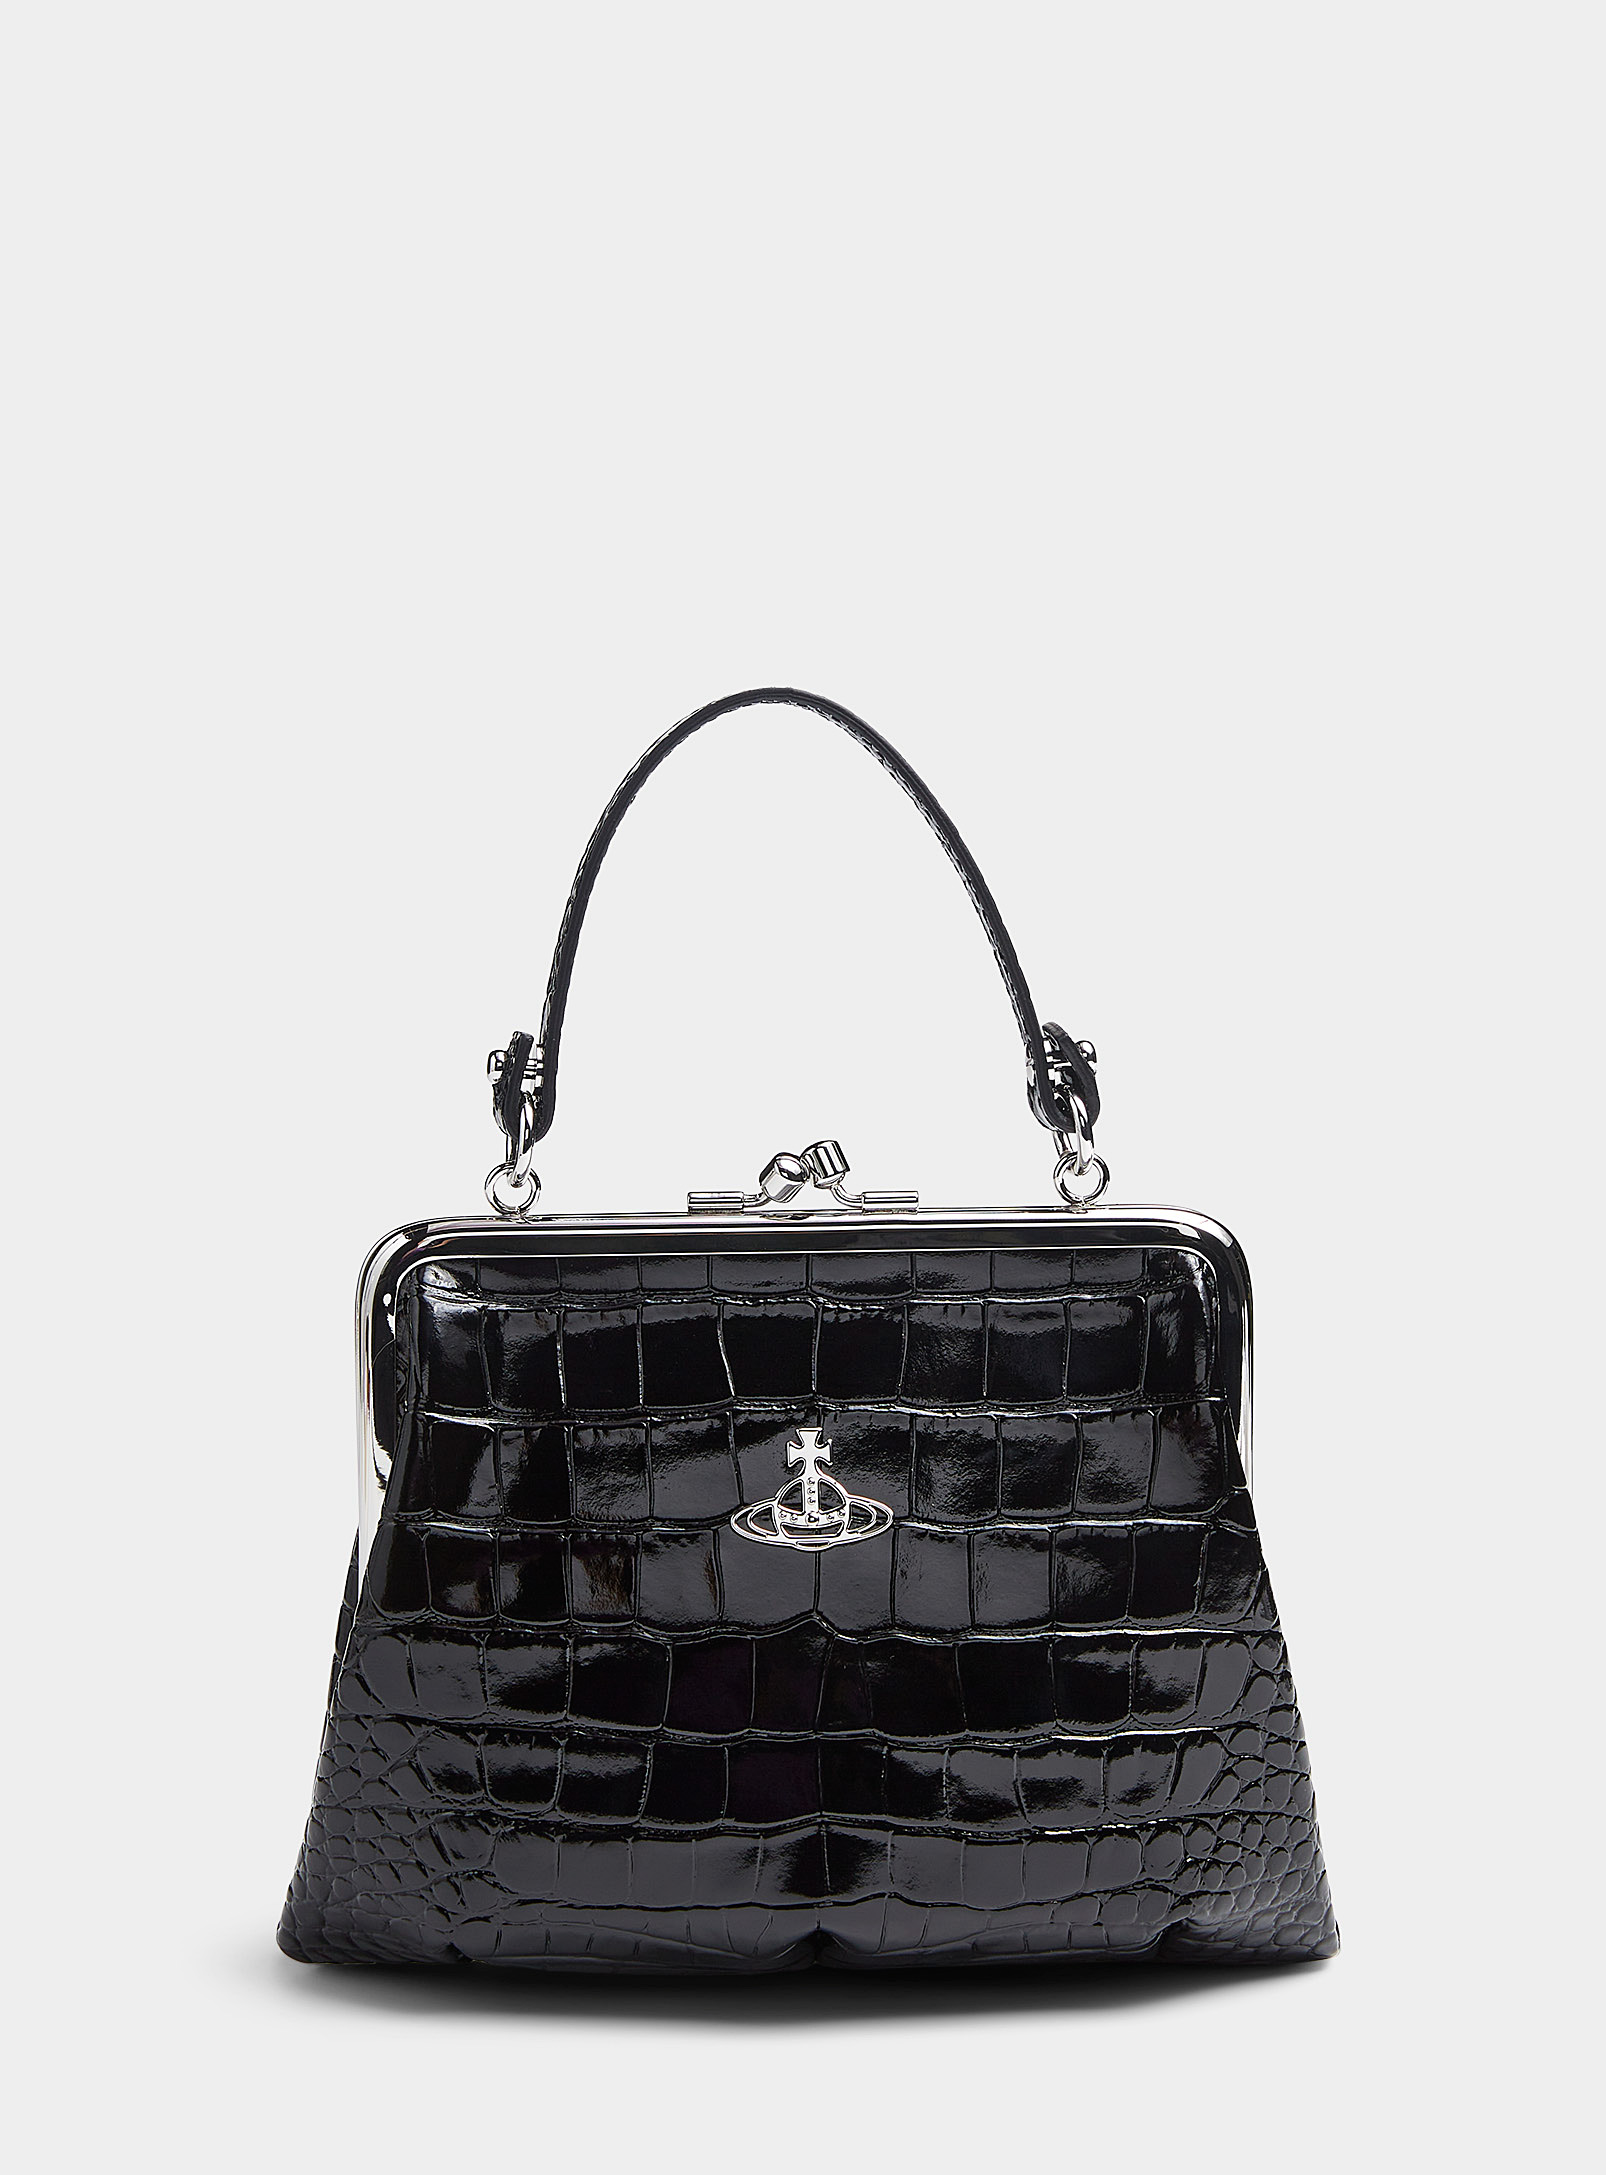 Vivienne Westwood - Women's Granny leather faux-croc handbag